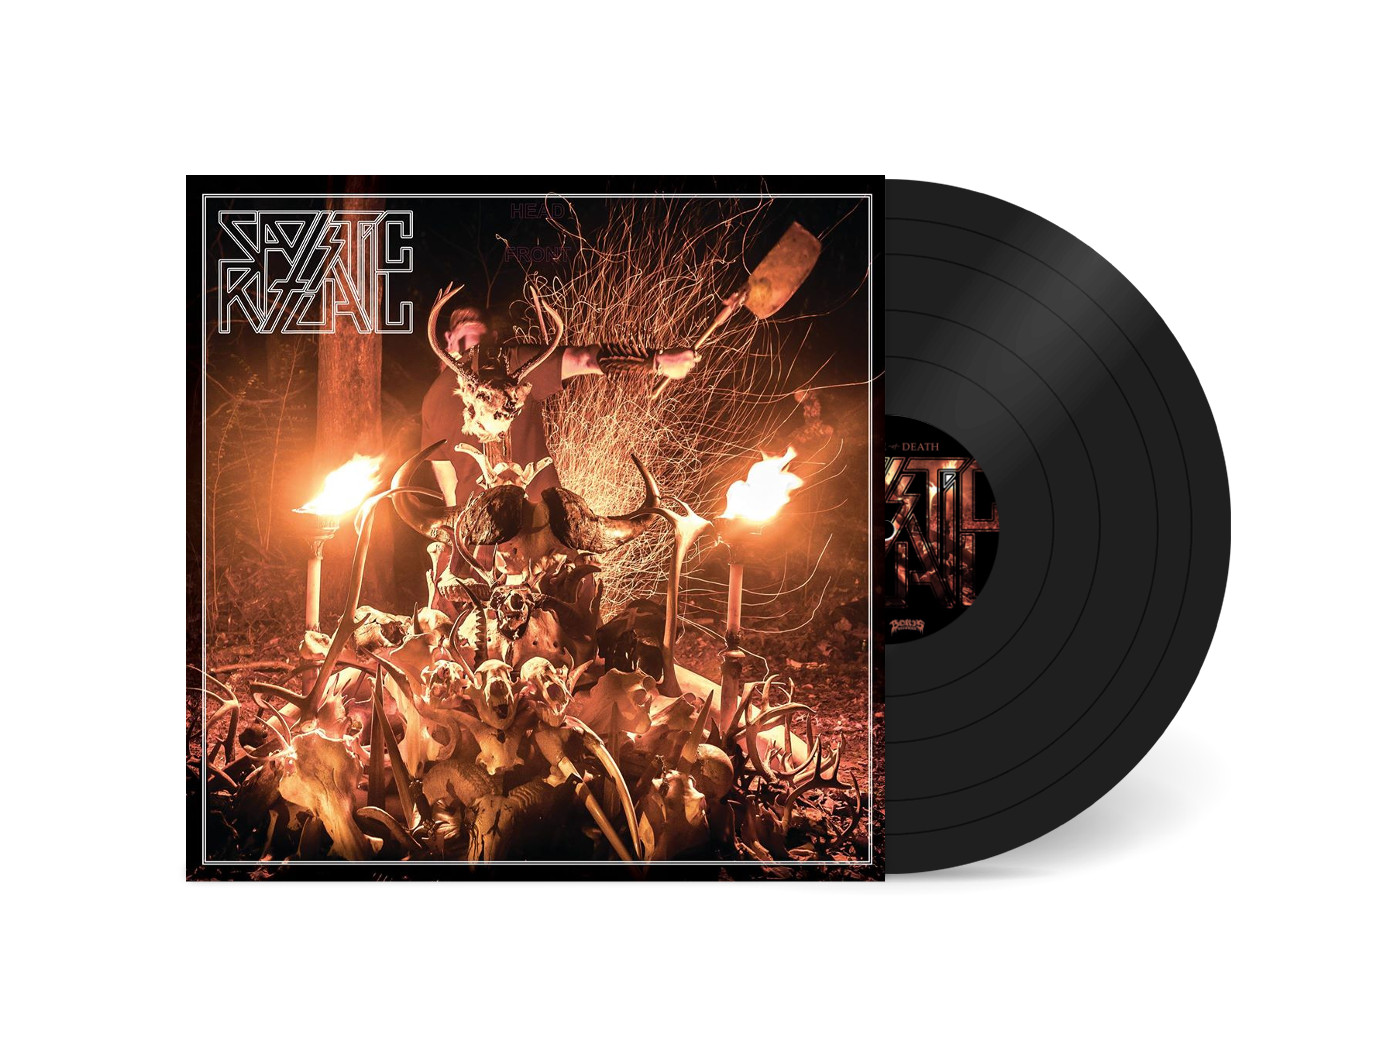 Sadistic Ritual - Visionaire of Death LP (black vinyl)